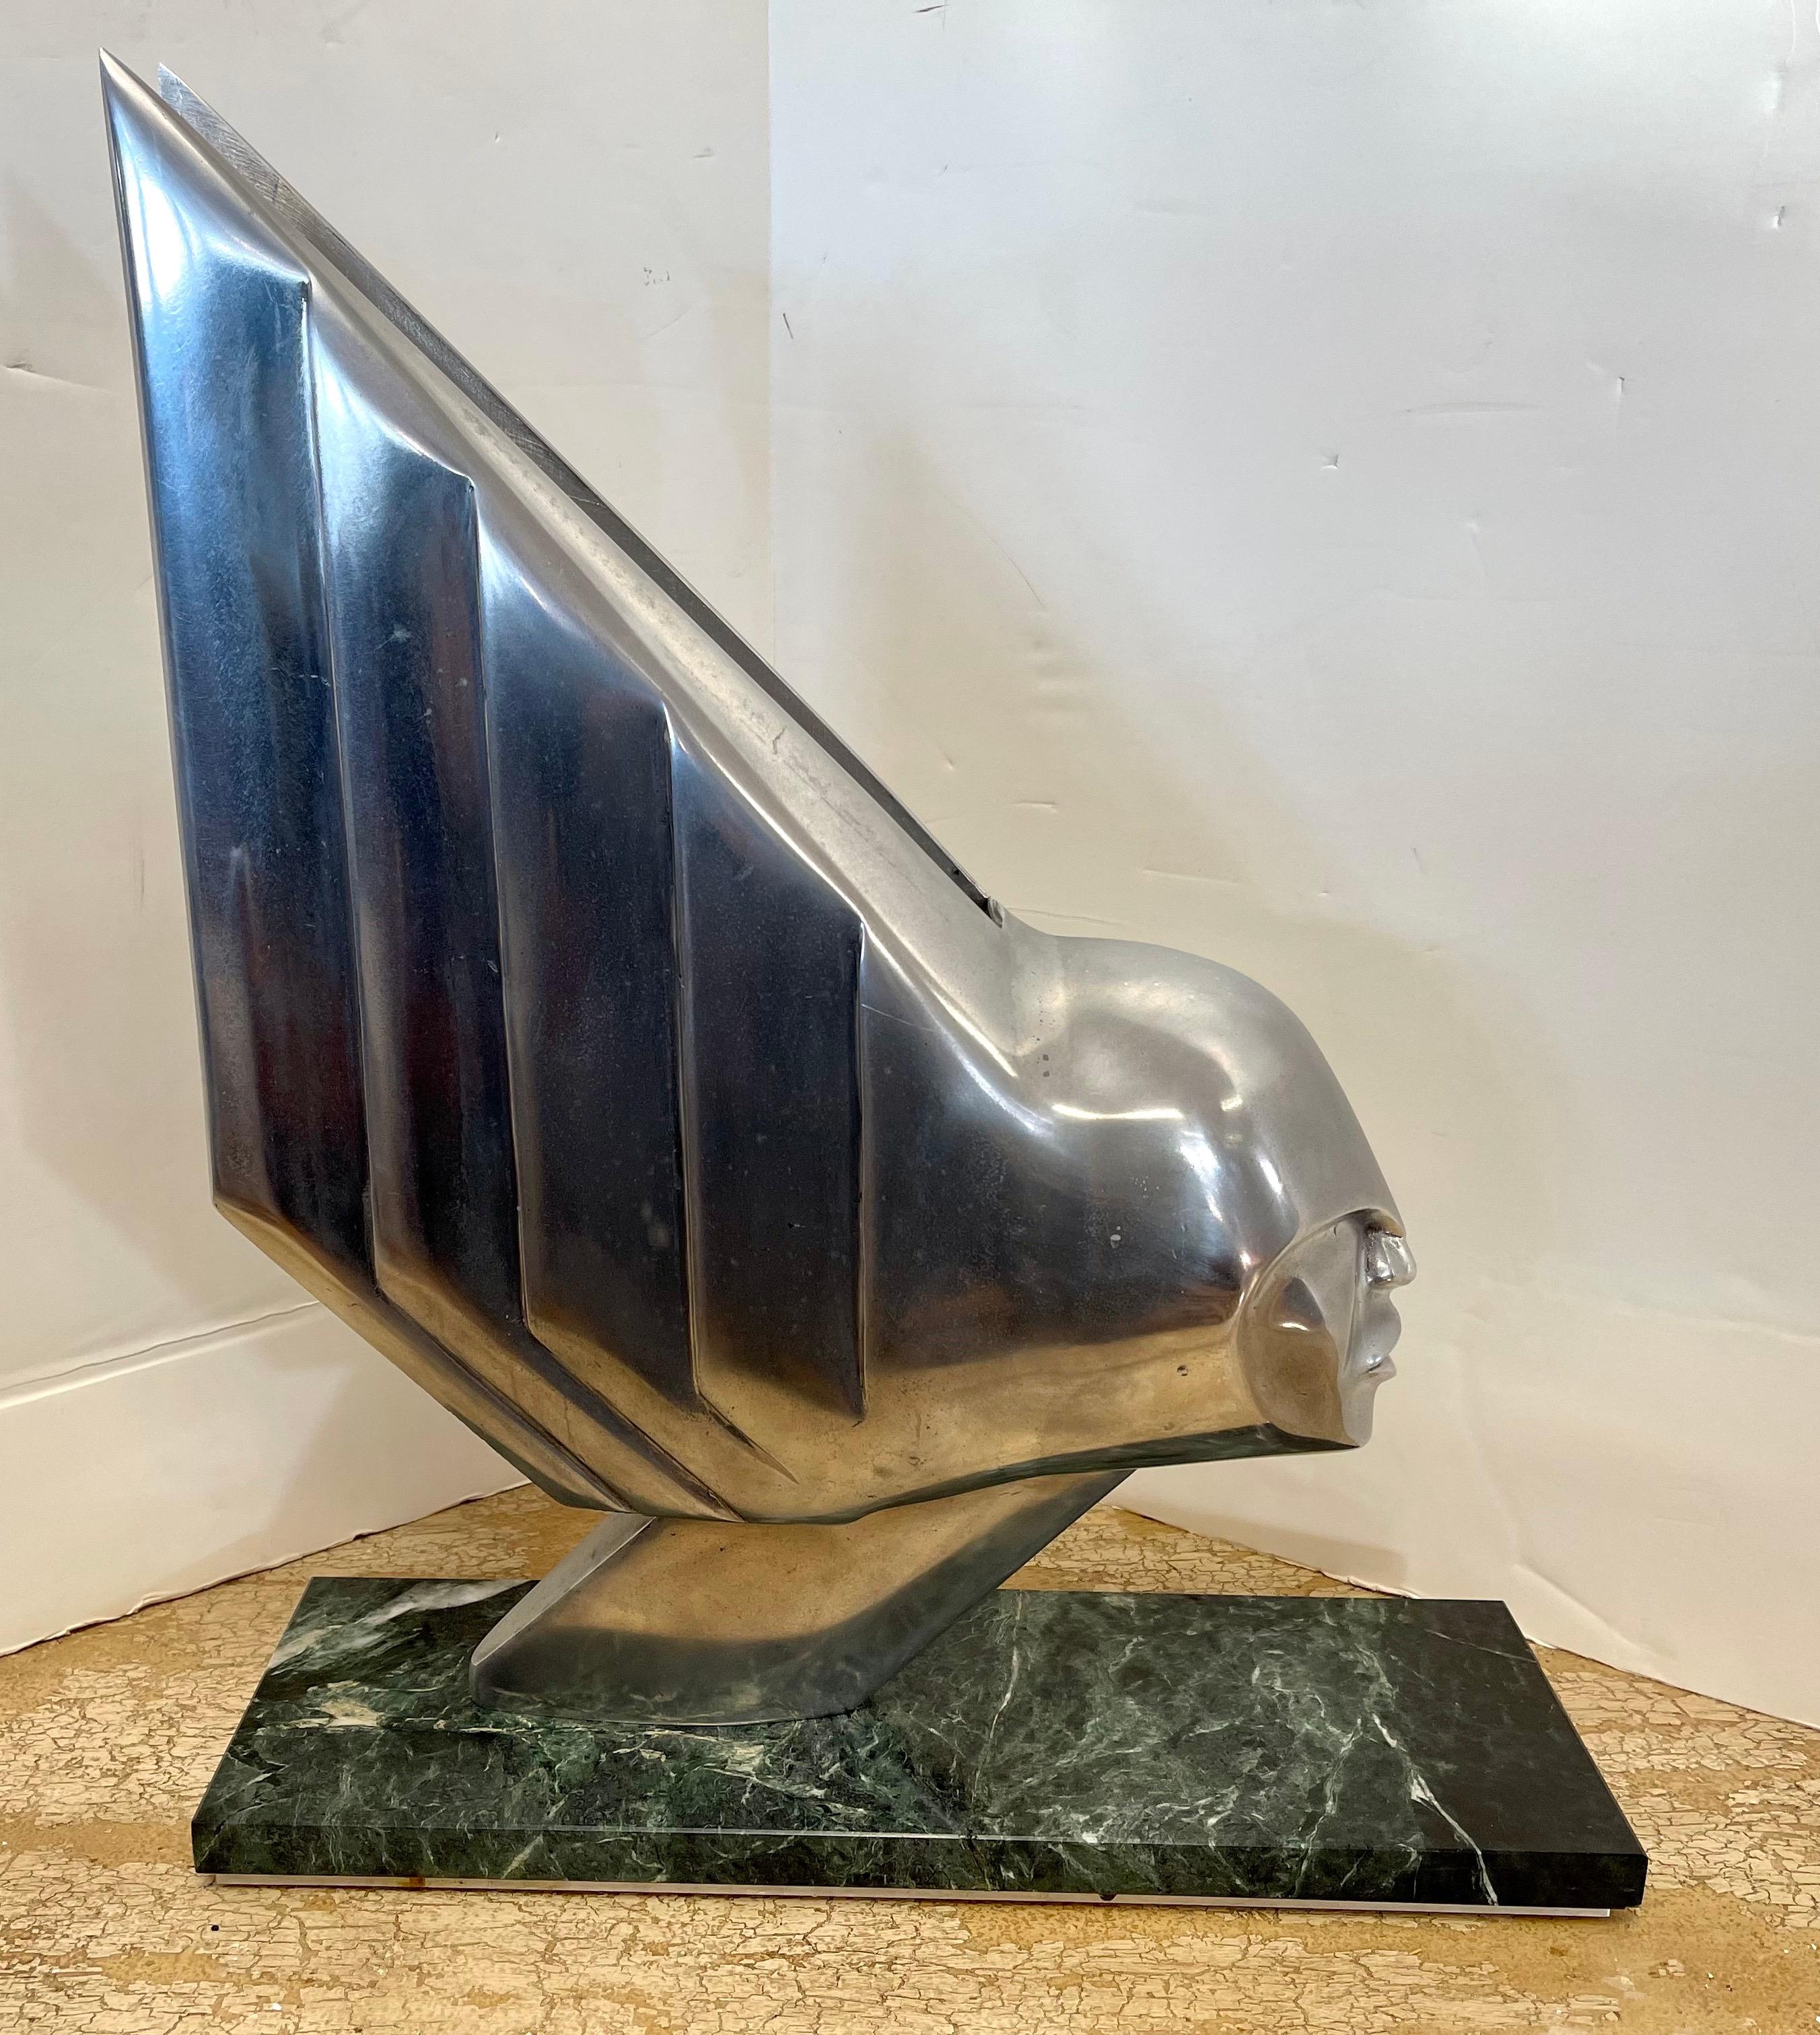 Superbe sculpture en aluminium et granit poli de Lee Duran (1941-2014). Cette œuvre d'art importante faisait partie des sculptures de sirènes de la série Chrome Goddess de Duran. Il n'existe que cinq exemplaires de cette sculpture et cinq autres